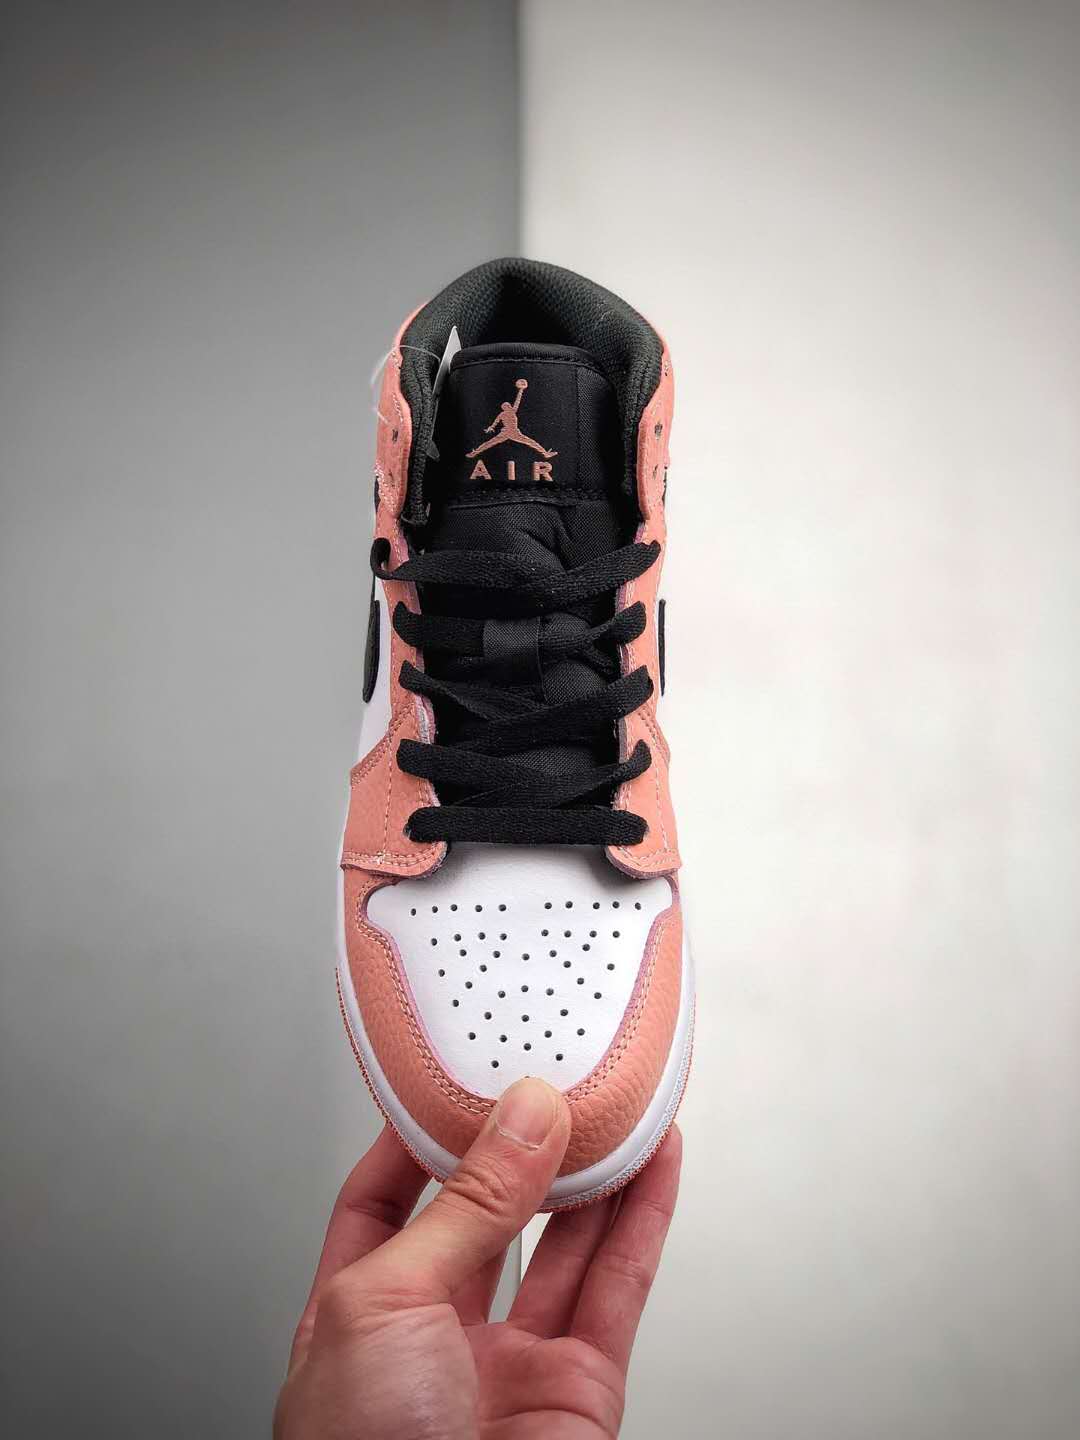 Air Jordan 1 Mid 'Pink Quartz' 555112-603 - Trendy Pink Quartz Colorway | Limited Stock